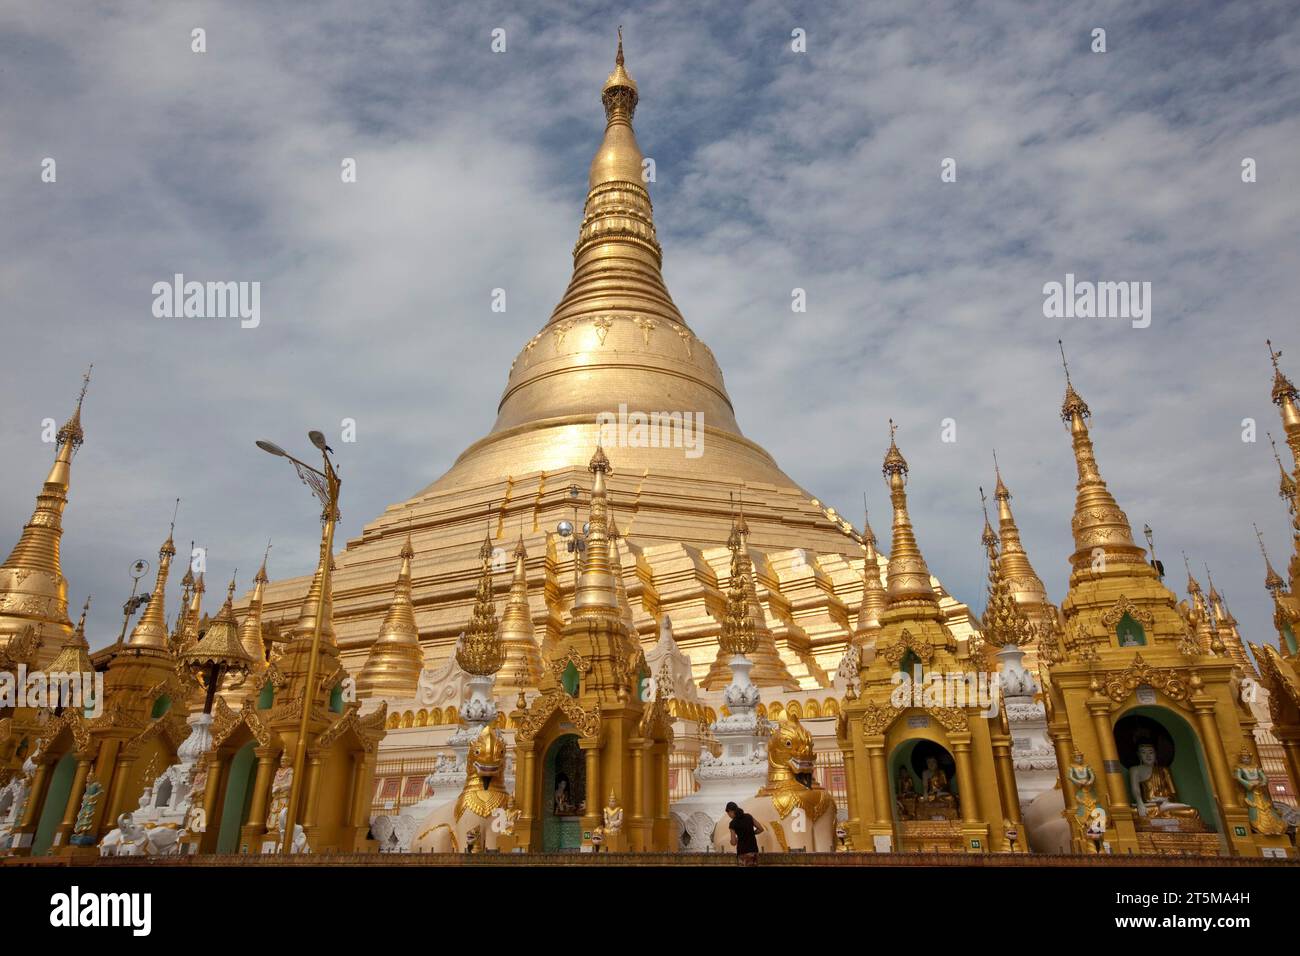 YANGON MYANMAR Stock Photo